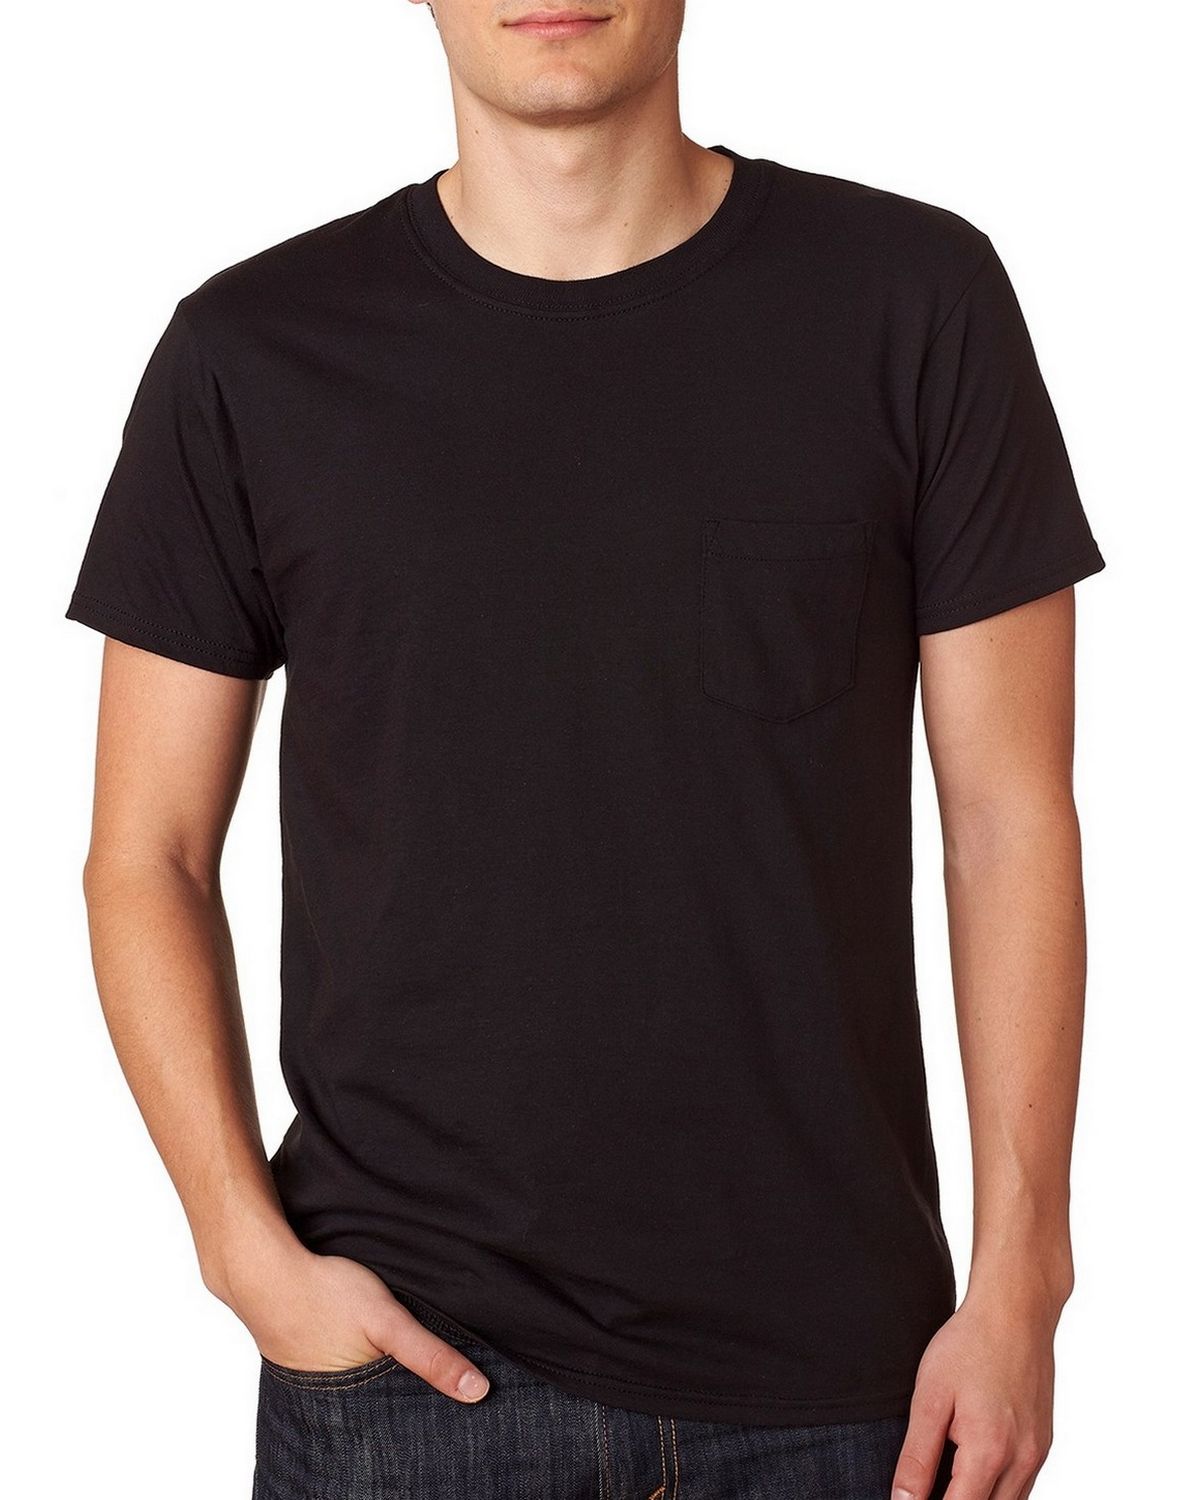 Hanes 498P 100% Ringspun Cotton Nano-T T Shirt - ApparelnBags.com